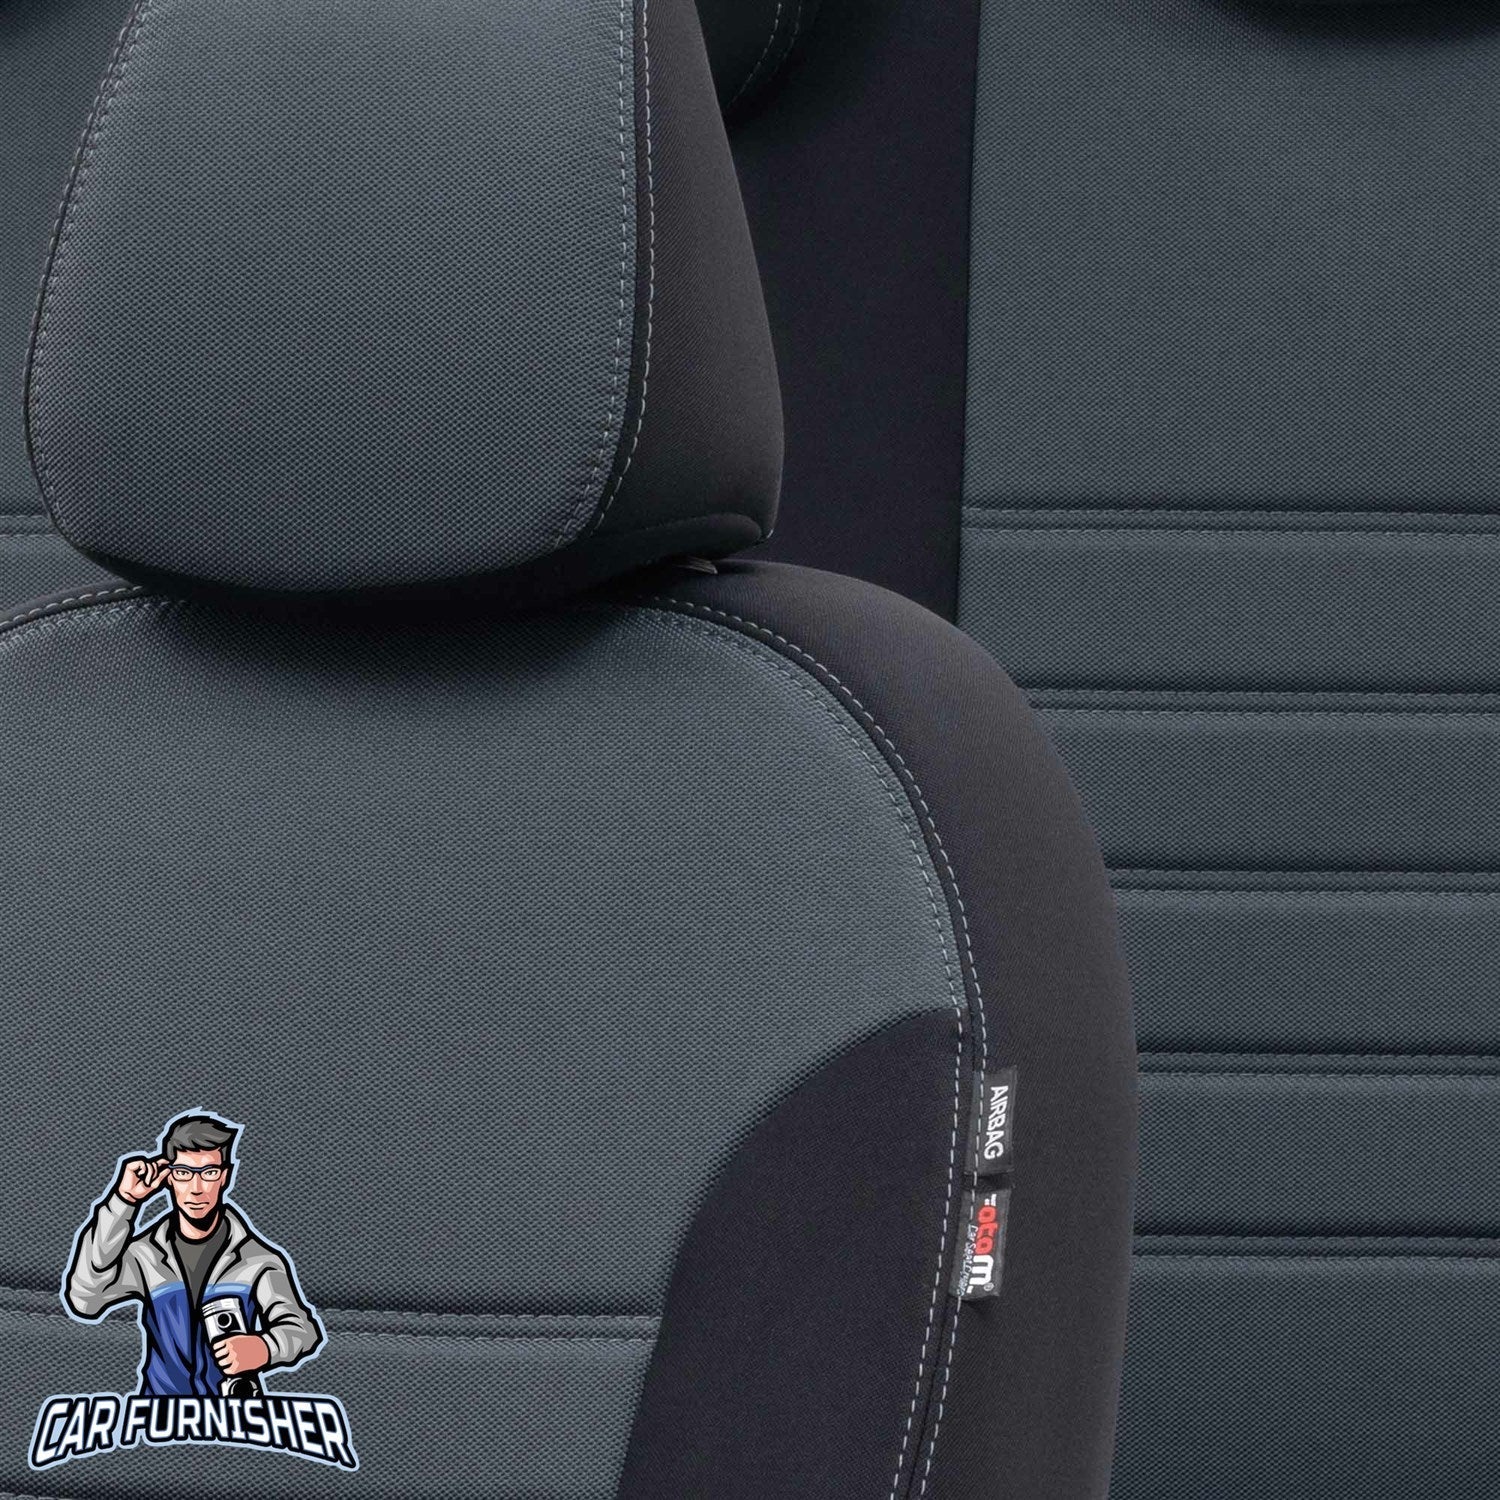 Hyundai Getz Seat Covers Original Jacquard Design Smoked Black Jacquard Fabric